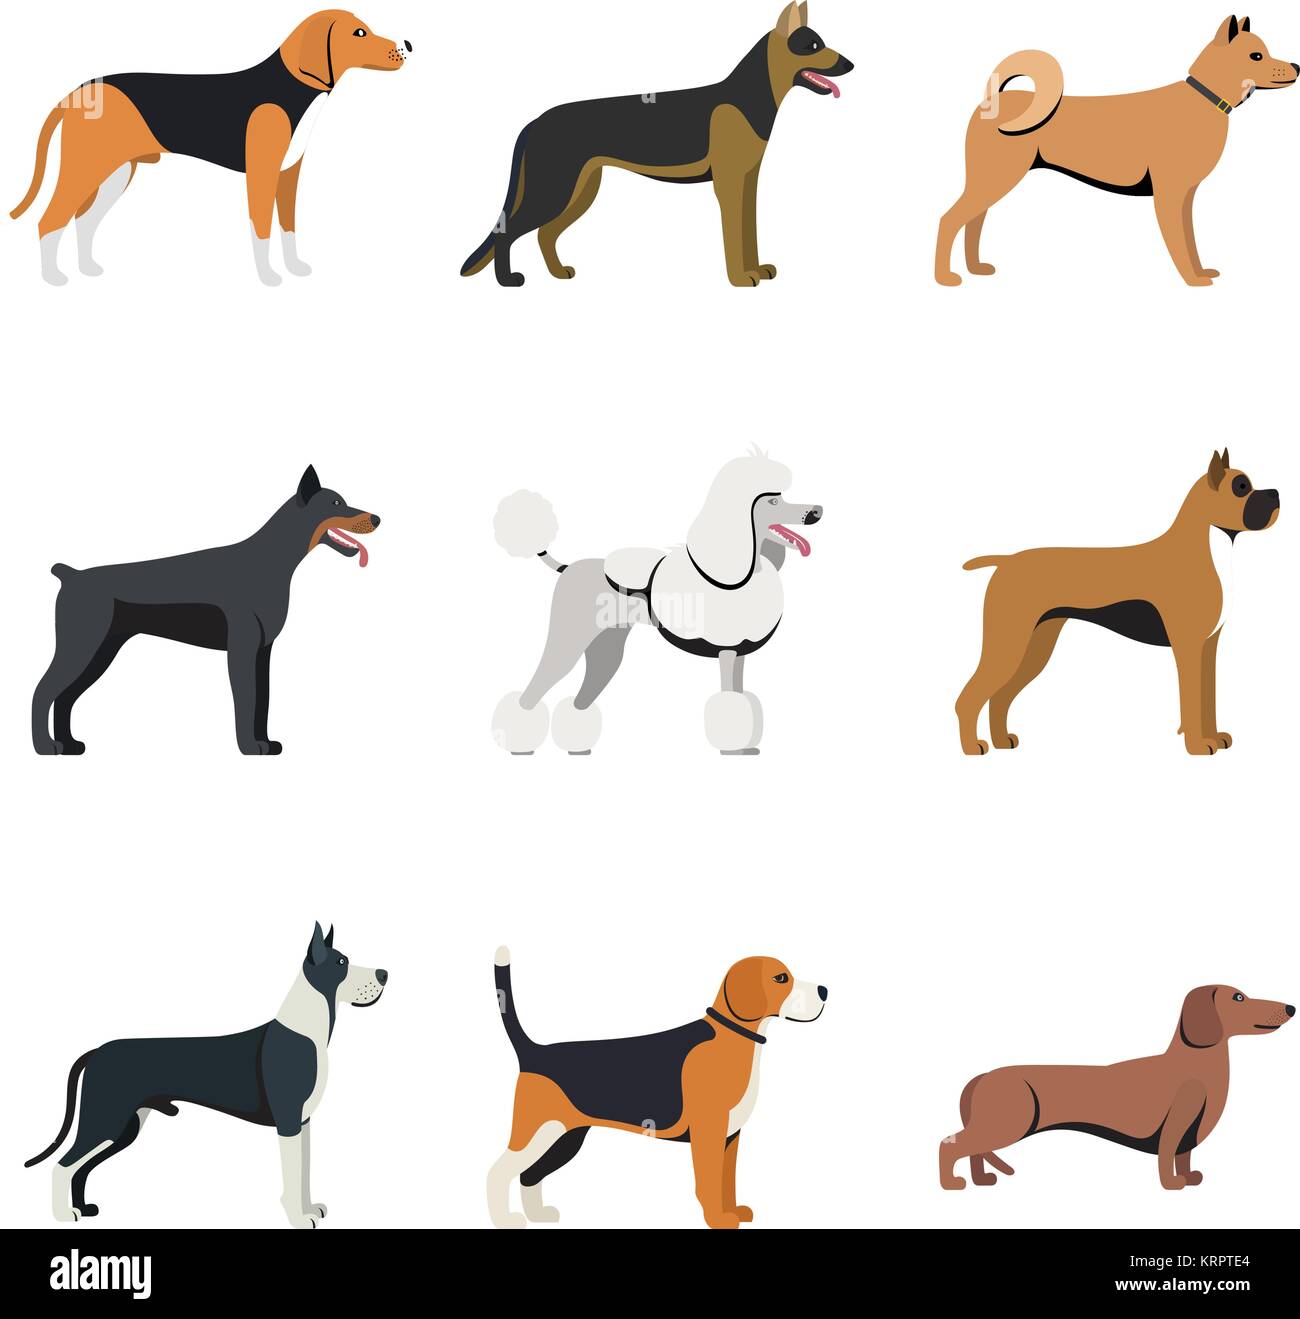 Diversi tipi di cani di razza con set di Beagle, pastore tedesco, Akita Inu, Doberman, Poodle, Boxer, Great Dane e bassotto. vettore isolato impostato Illustrazione Vettoriale